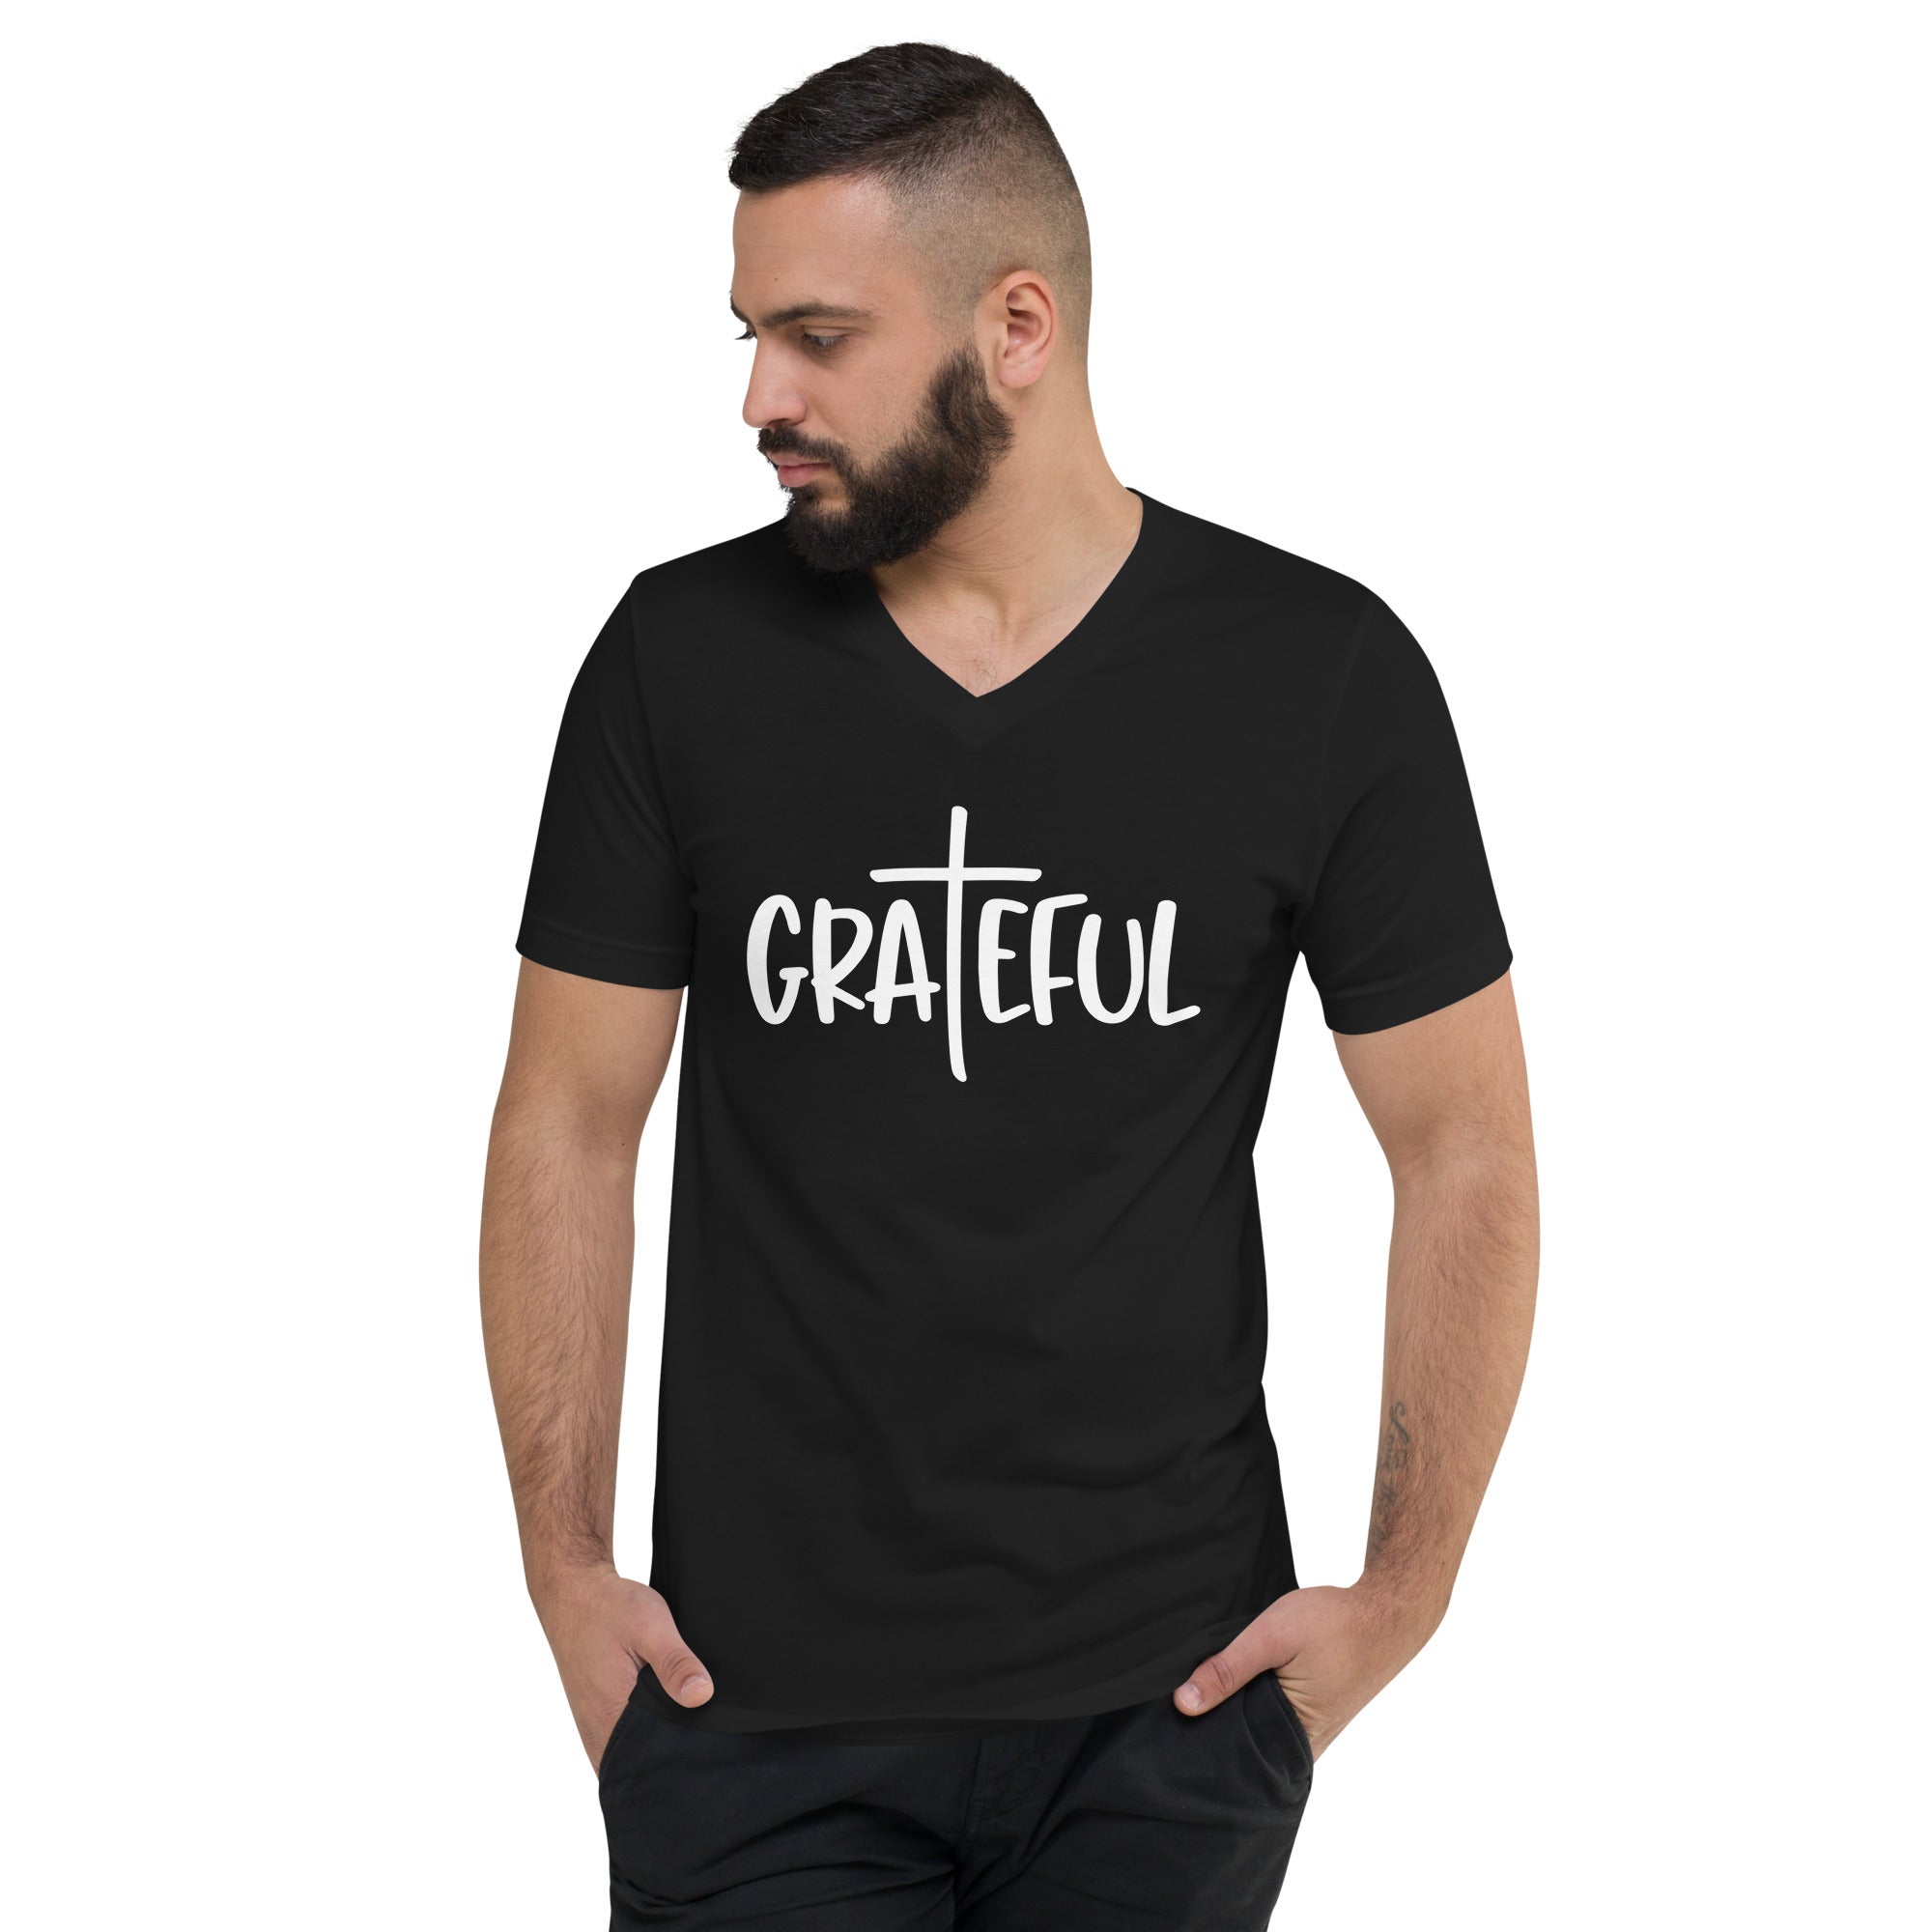 Grateful - Men's V-Neck T-Shirt